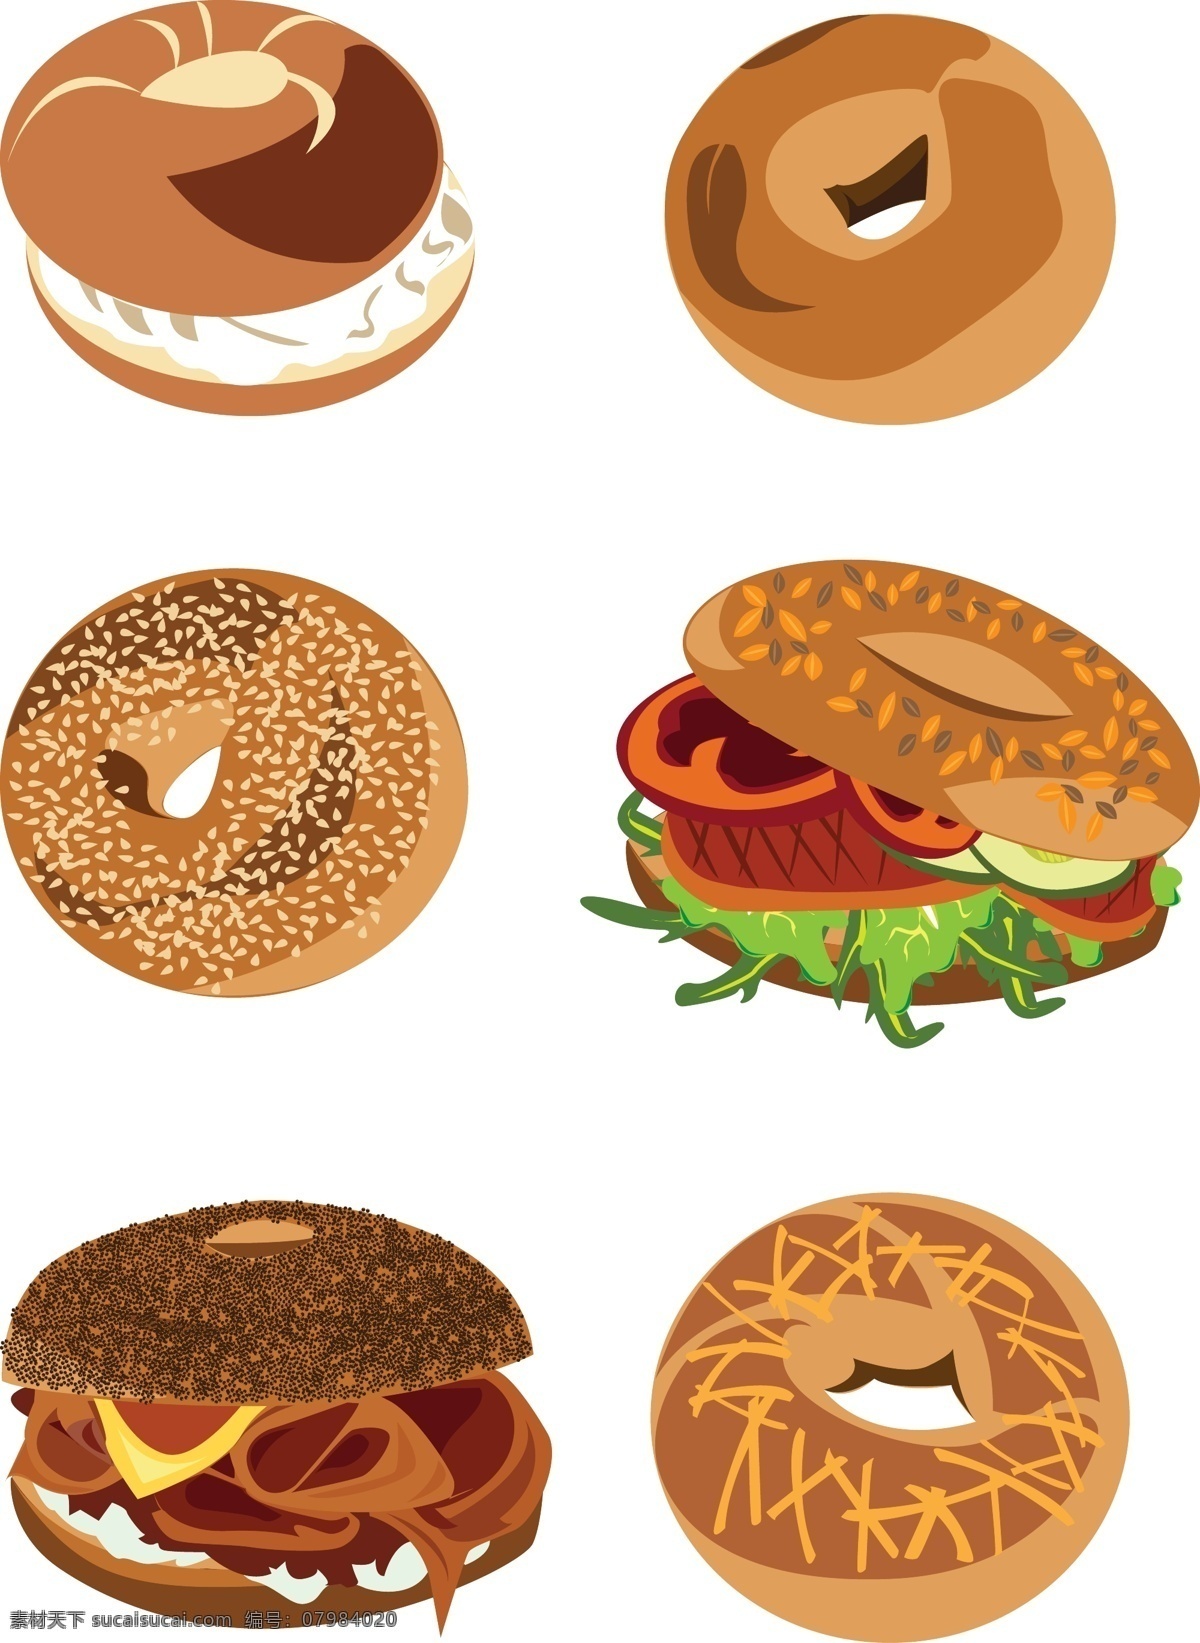 卡通 矢量 手绘 甜甜 圈 面包 汉堡 卡通矢量 早餐 面包片甜甜圈 培根肉 三明治 芝士酱 食物 美食 野餐